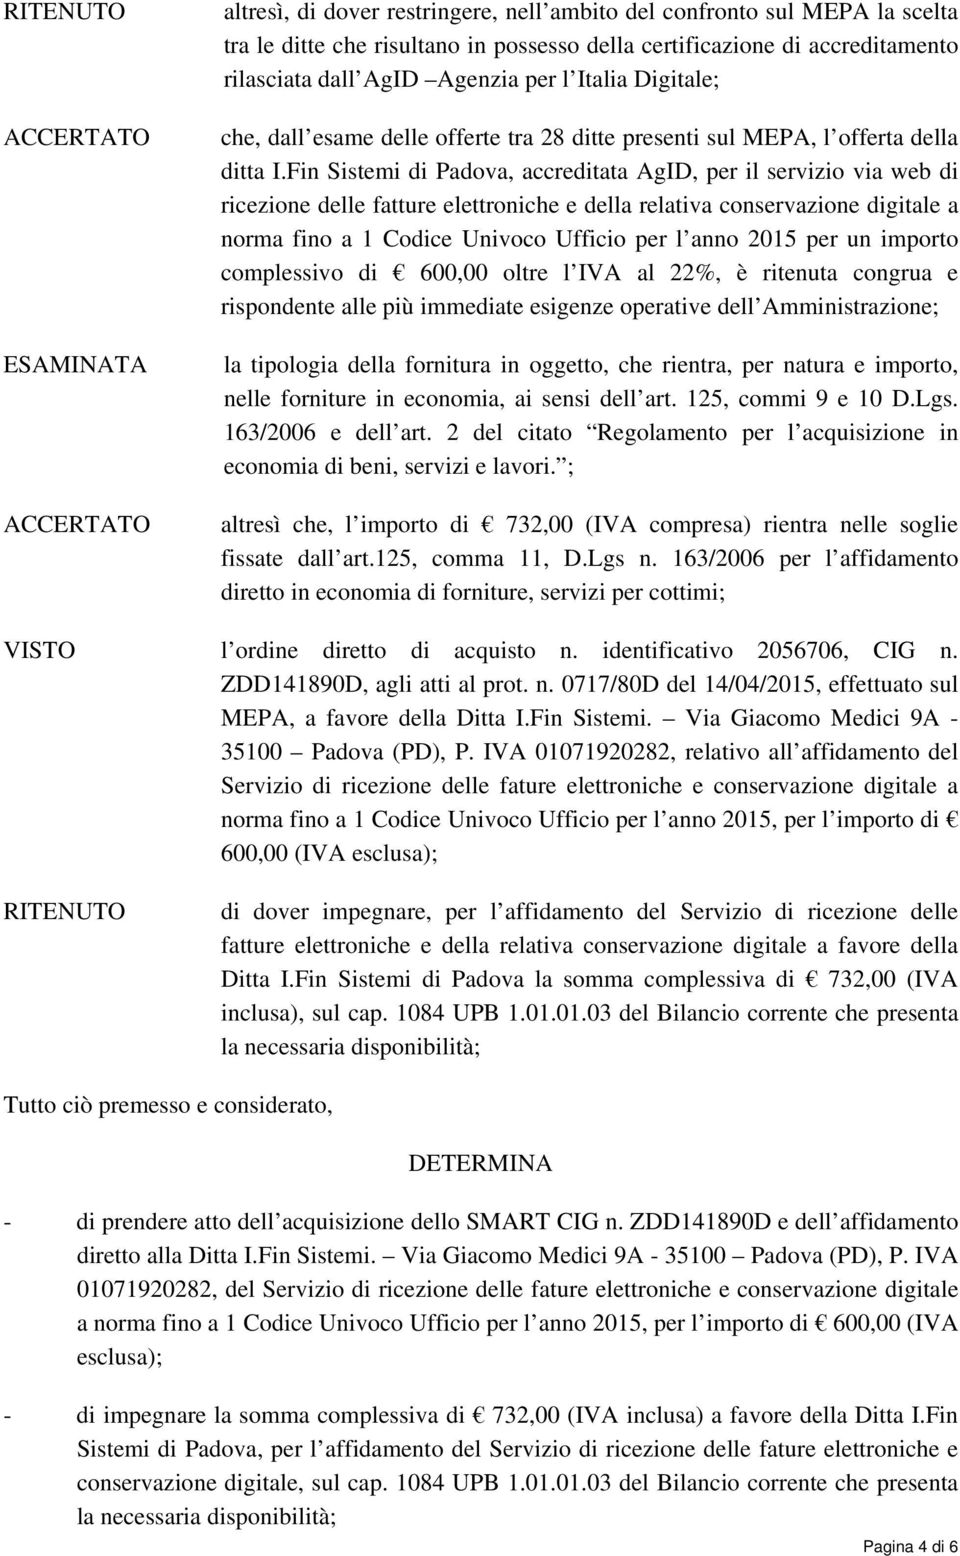 Fin Sistemi di Padova, accreditata AgID, per il servizio via web di ricezione delle fatture elettroniche e della relativa conservazione digitale a norma fino a 1 Codice Univoco Ufficio per l anno